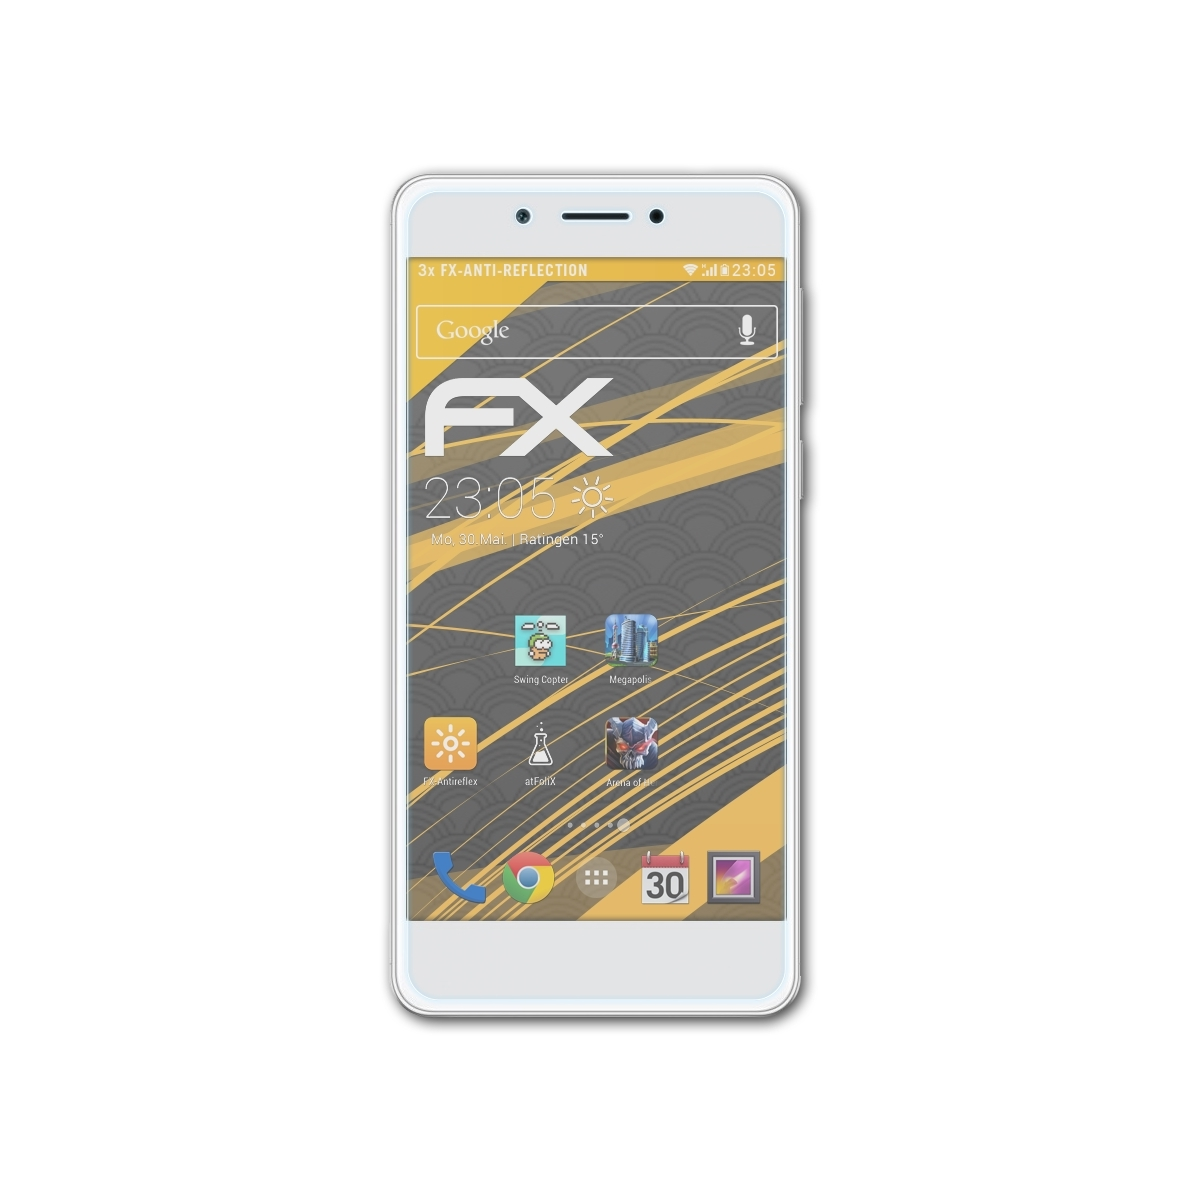 FX-Antireflex ATFOLIX Huawei Honor Displayschutz(für 6C) 3x